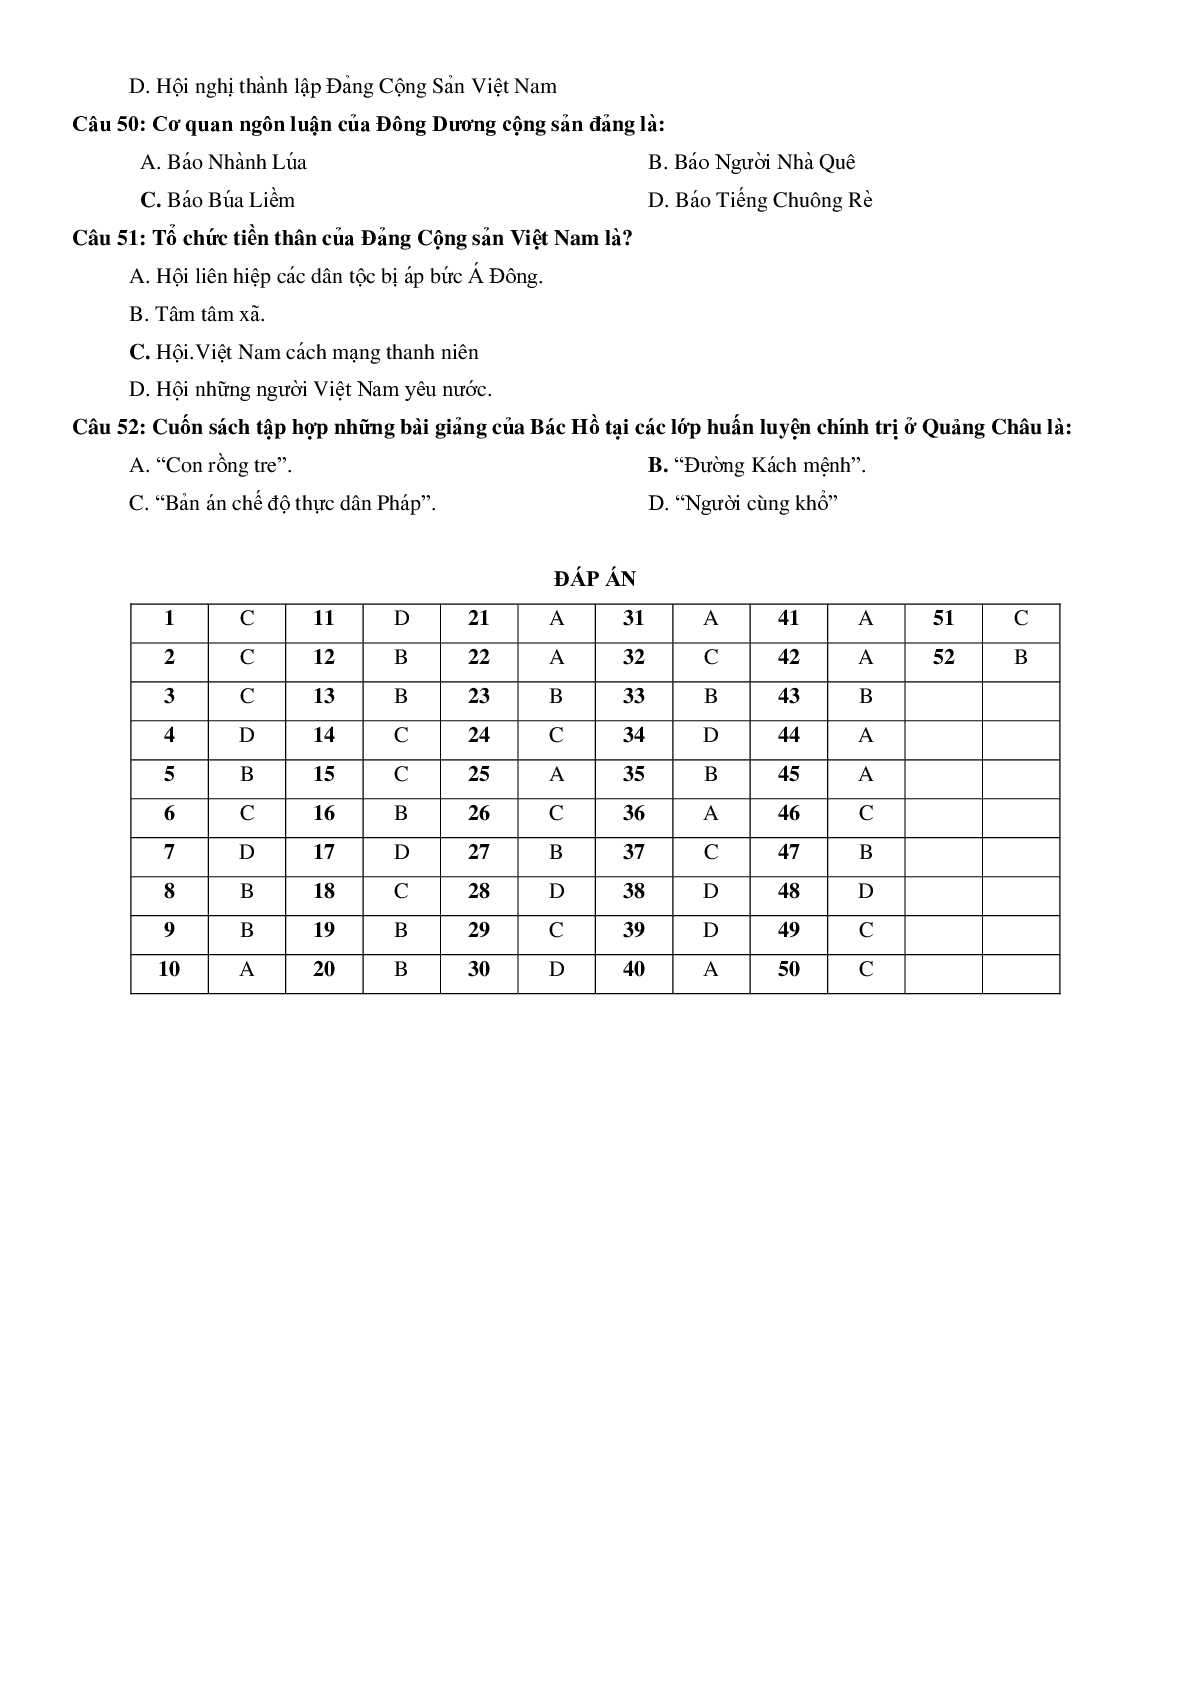 Chuyên đề bài tập trắc nghiệm phần lịch sử Việt Nam theo chủ đề môn Lịch sử lớp 12 (trang 7)